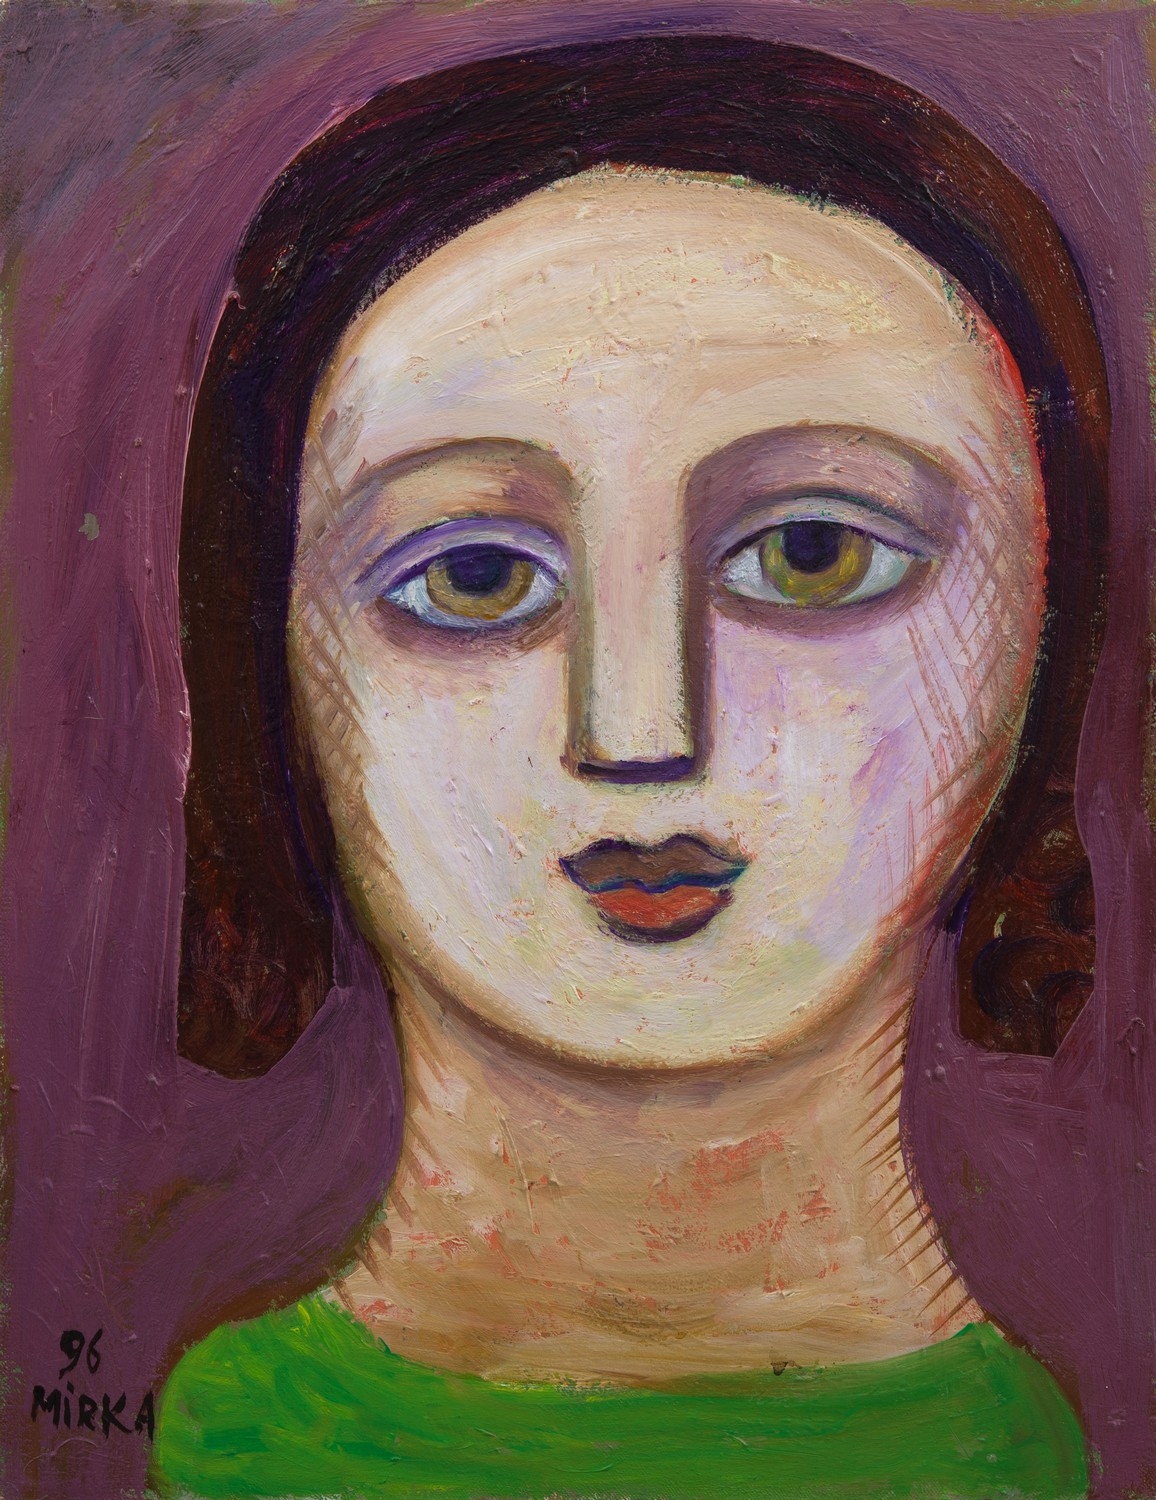 Female Portrait by Mirka Mora, 1996